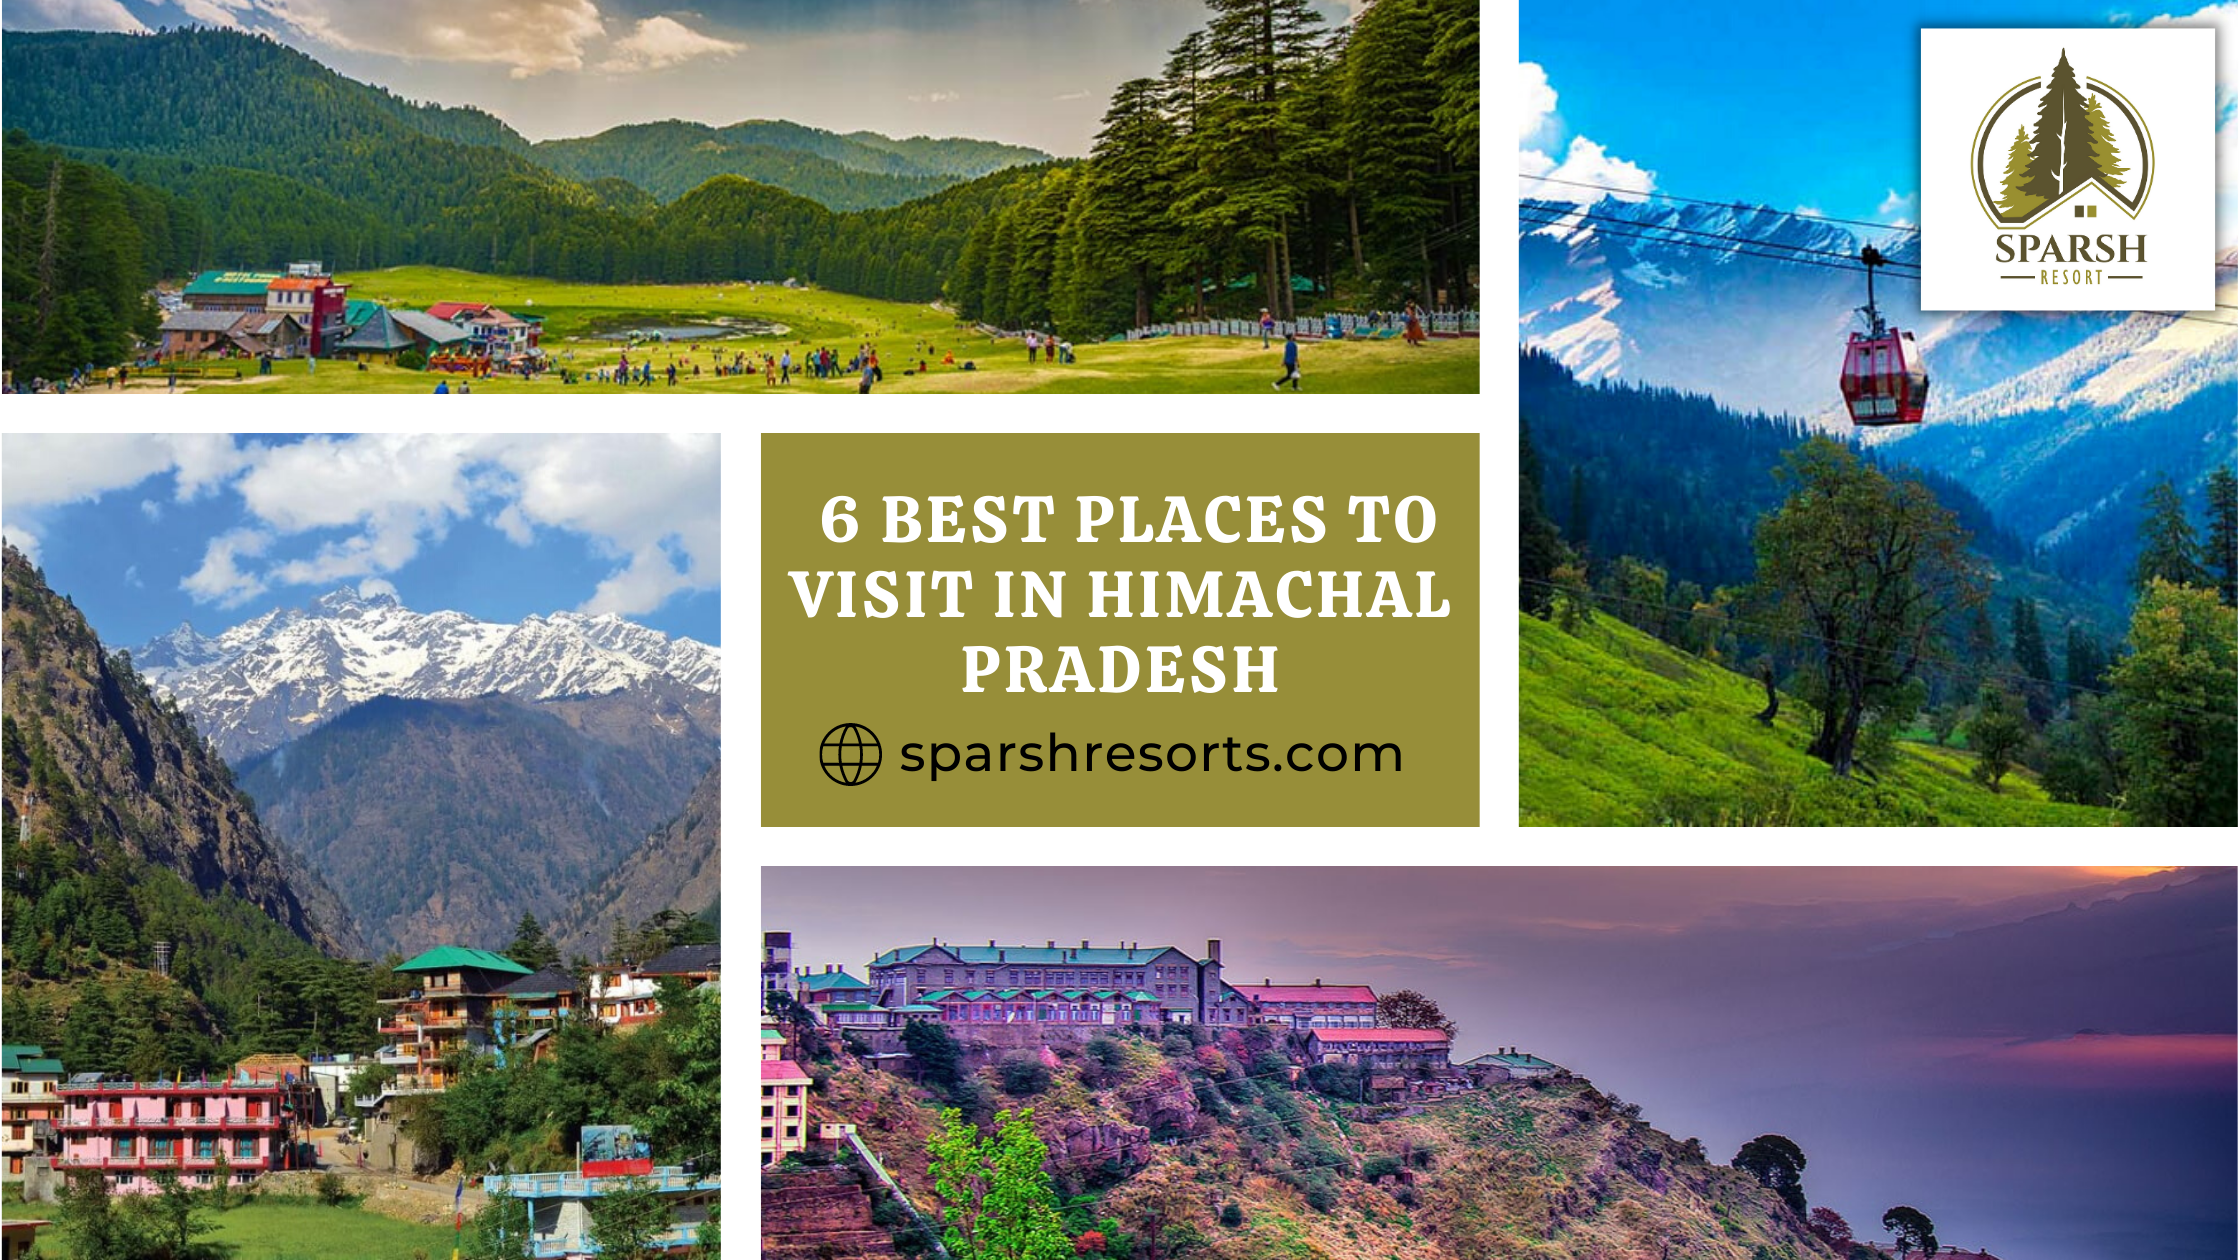 6 best places to visit in Himachal Pradesh - Sparsh Resort